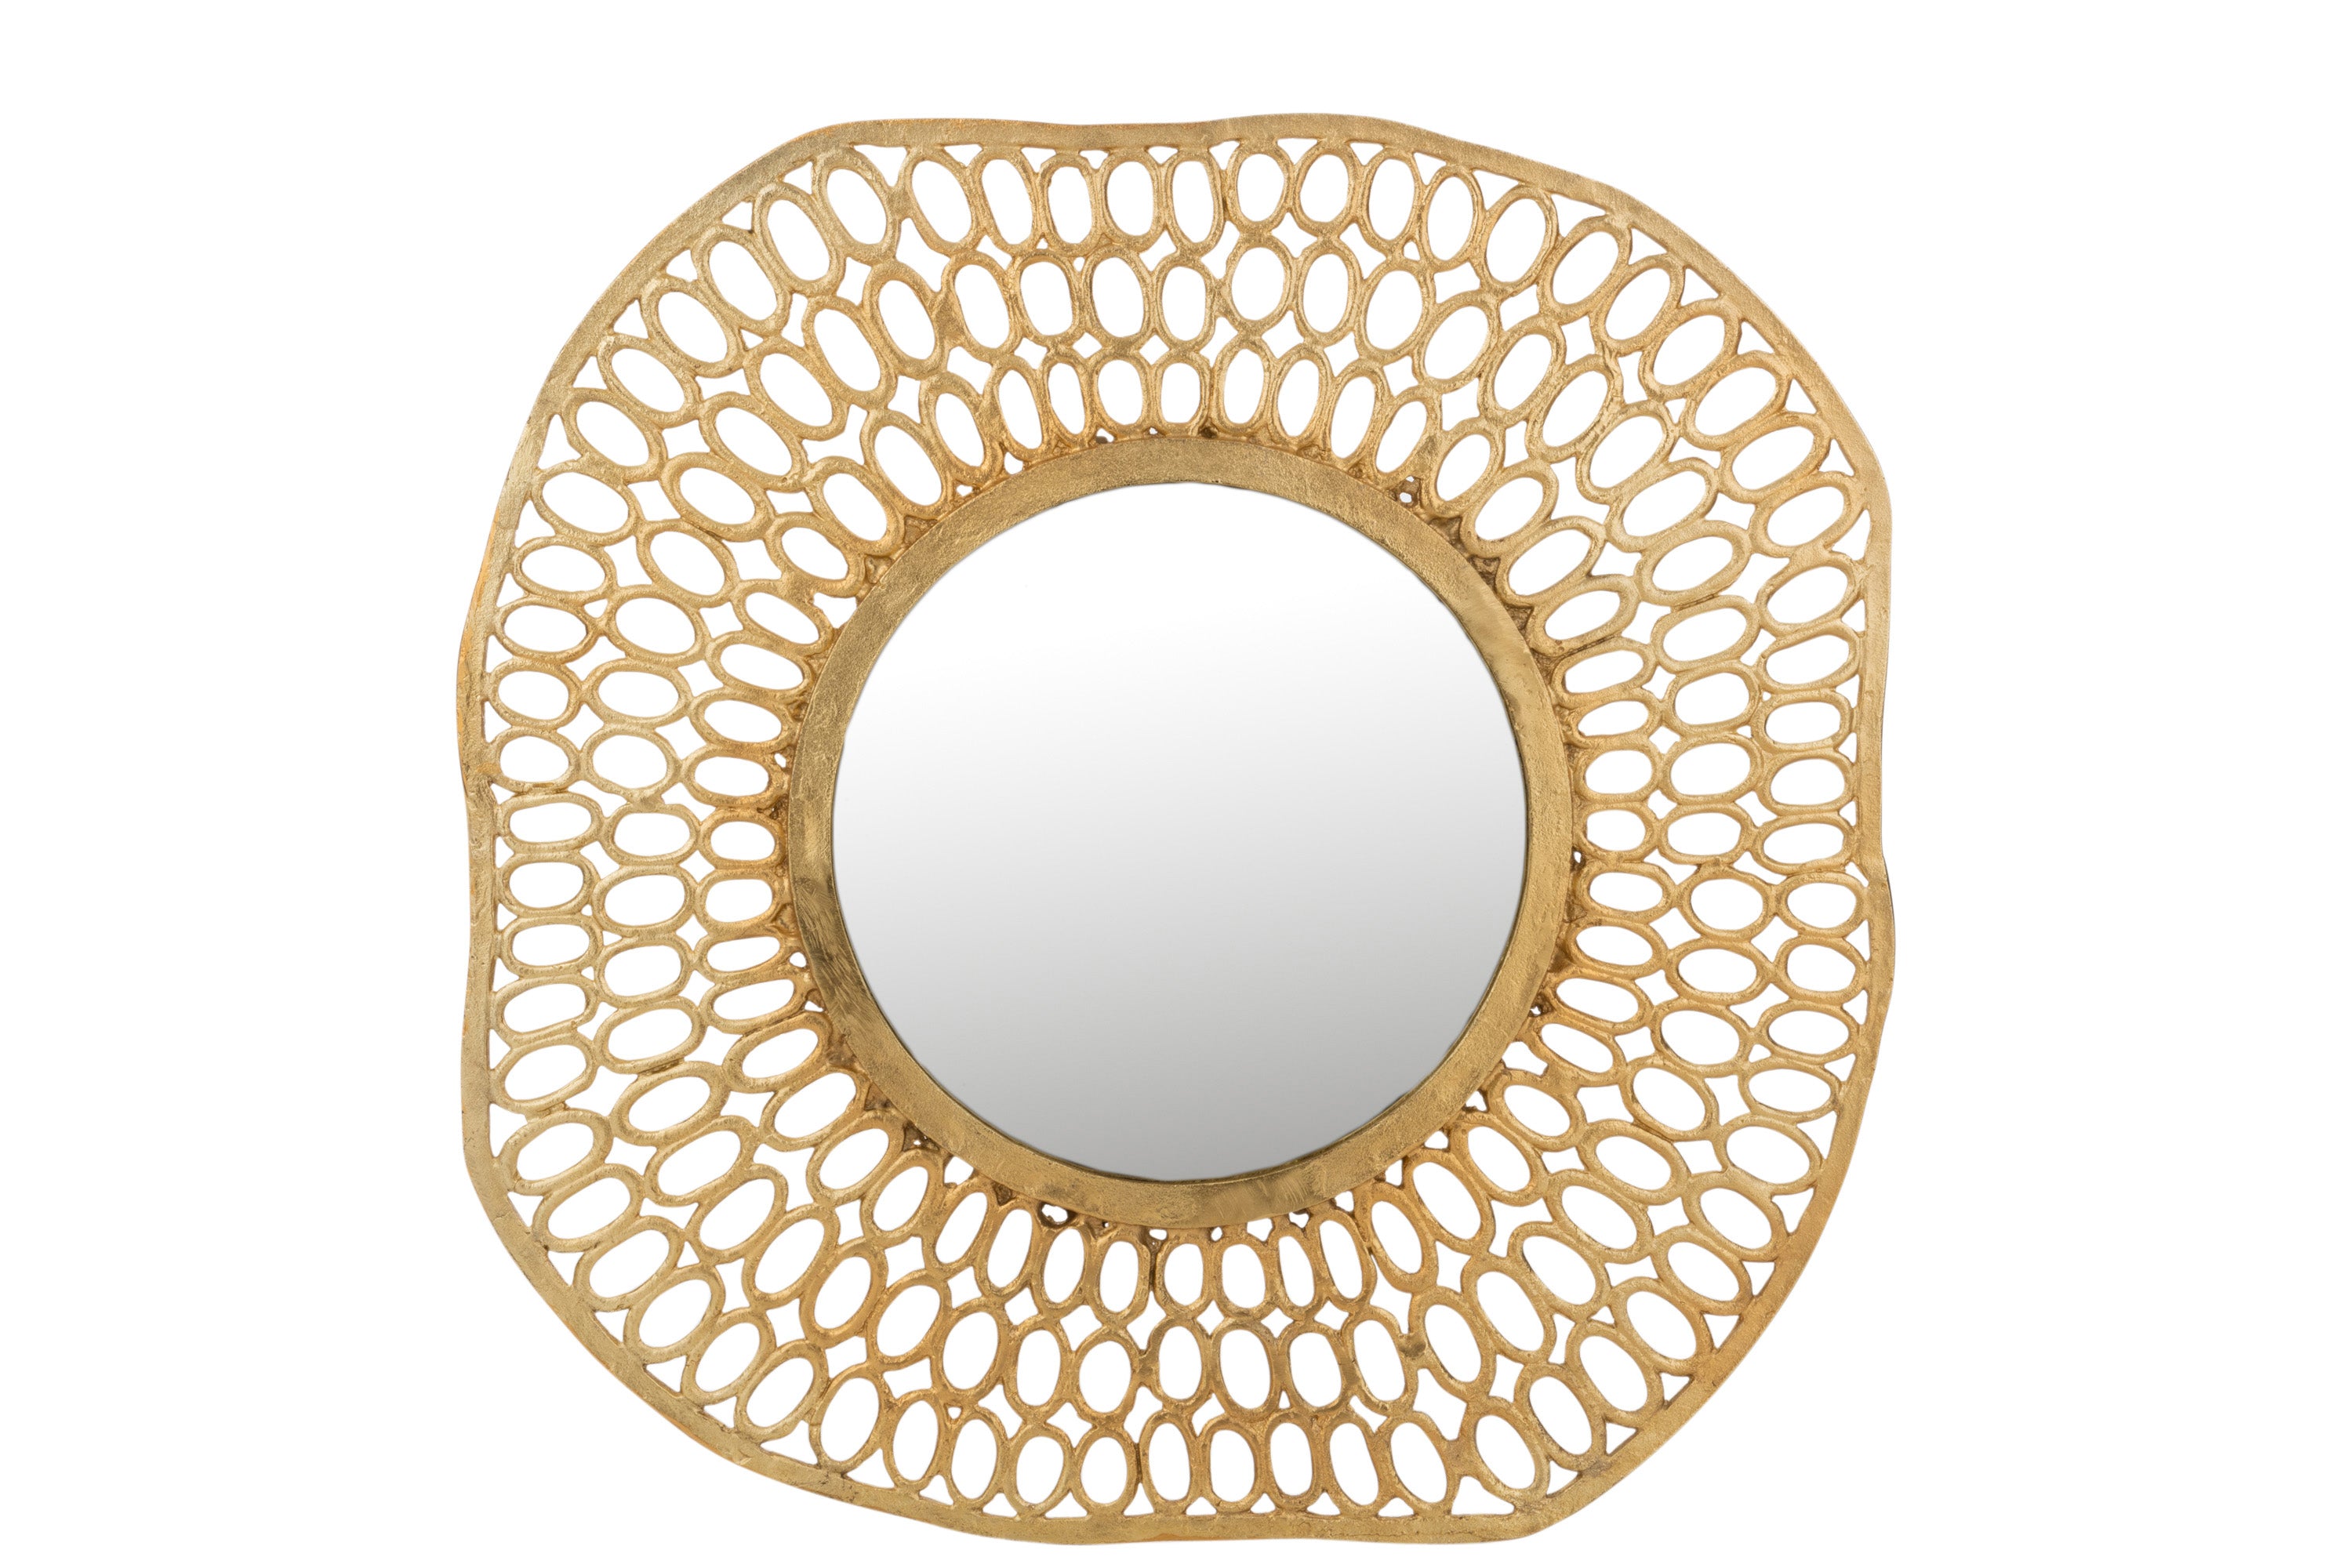 Goldener Spiegel umgeben von einem Metallband, daran  ein Kranz aus vier Reihen leicht unterschiedlich großen, ovalen Ringen, die wiederum mit einem goldenen Metallband eingefasst sind.